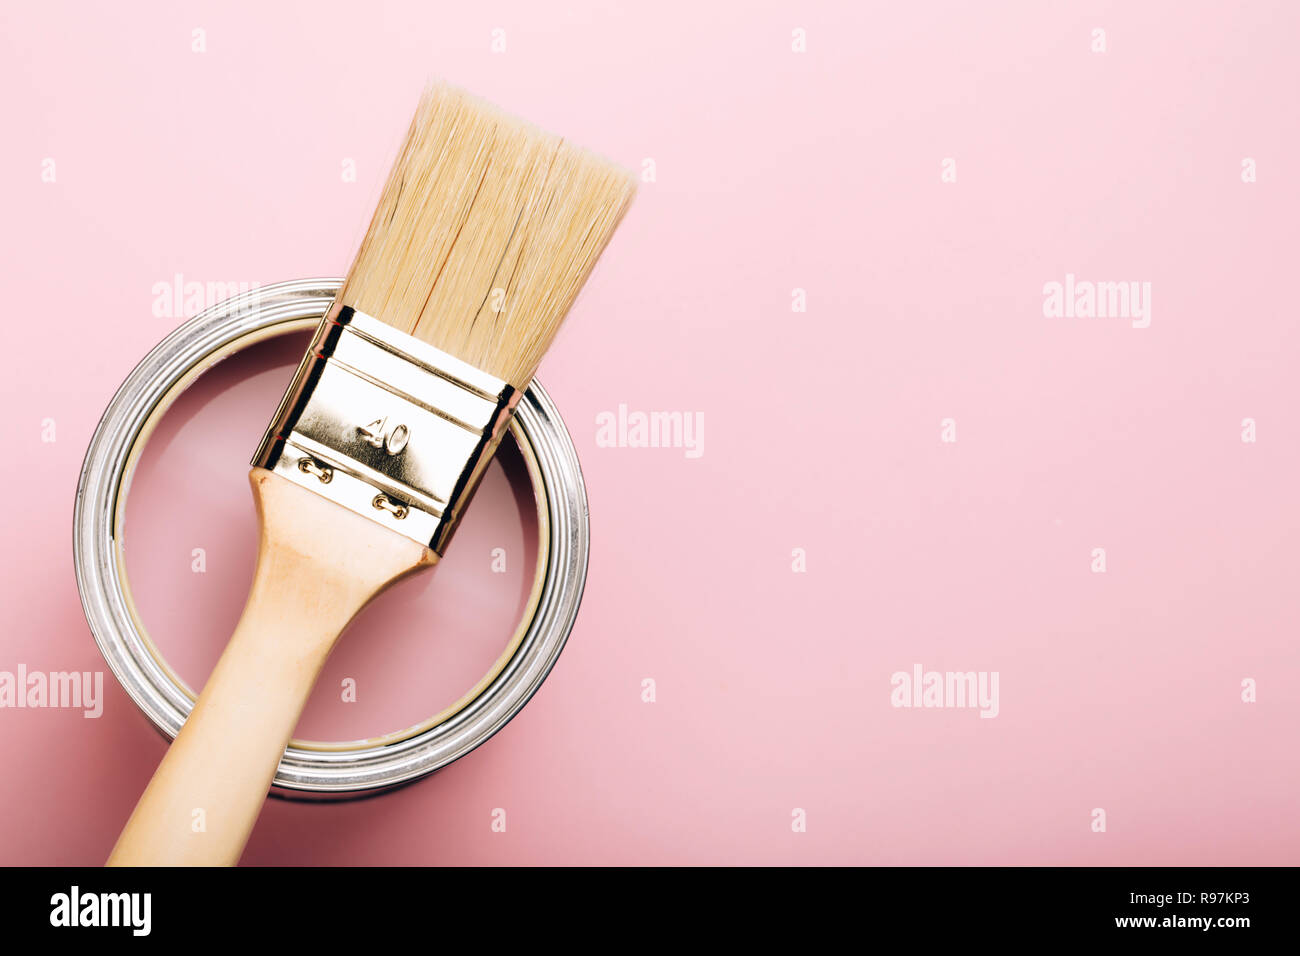 Brosse avec poignée en bois sur ouvert peut de peinture rose sur fond pastel. Concept de rénovation. Macro. Banque D'Images